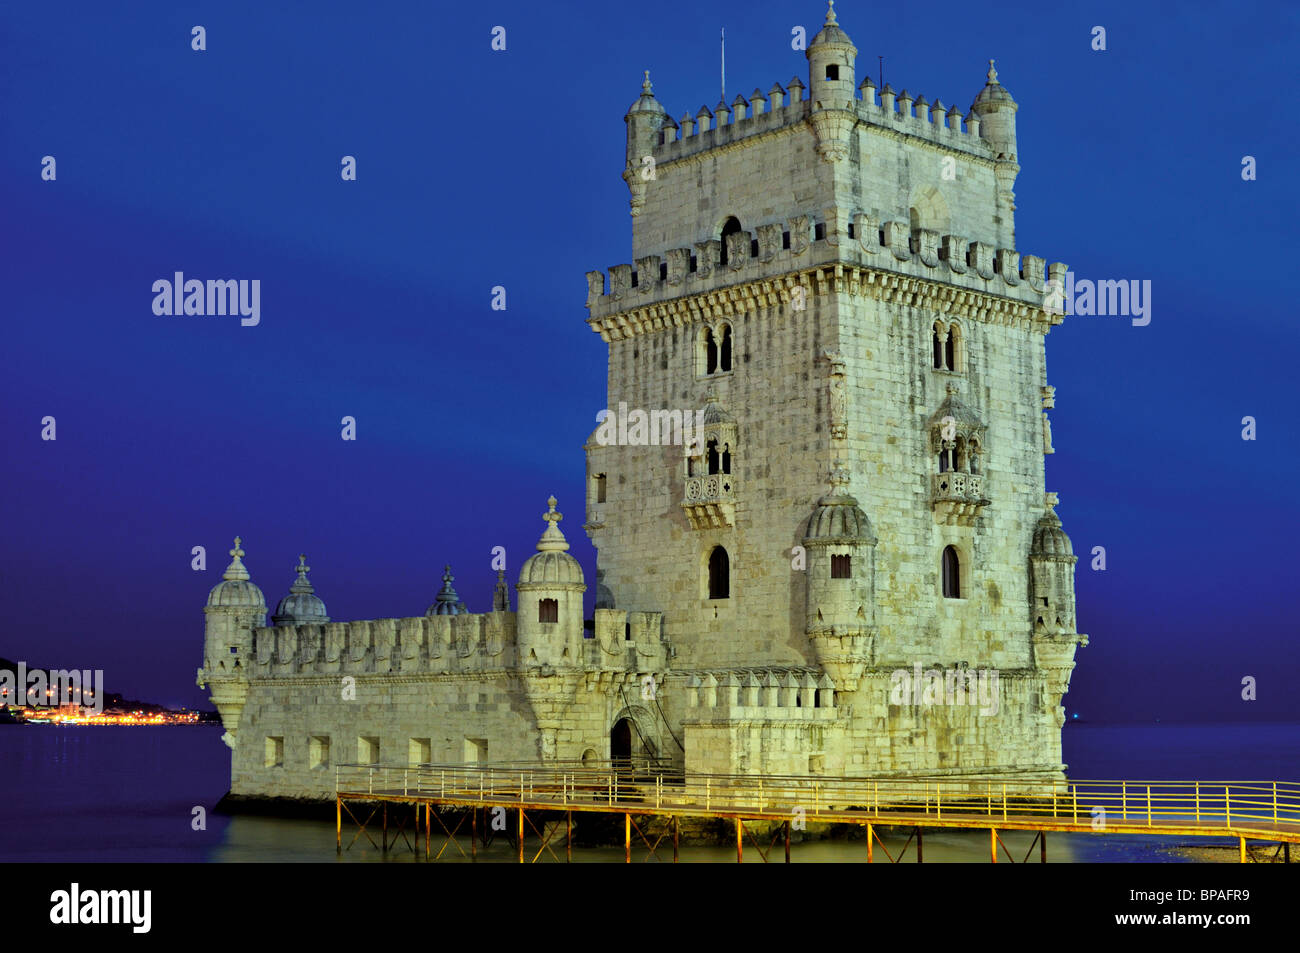 Portugal, Lisbonne : la Tour de Belém par nuit Banque D'Images